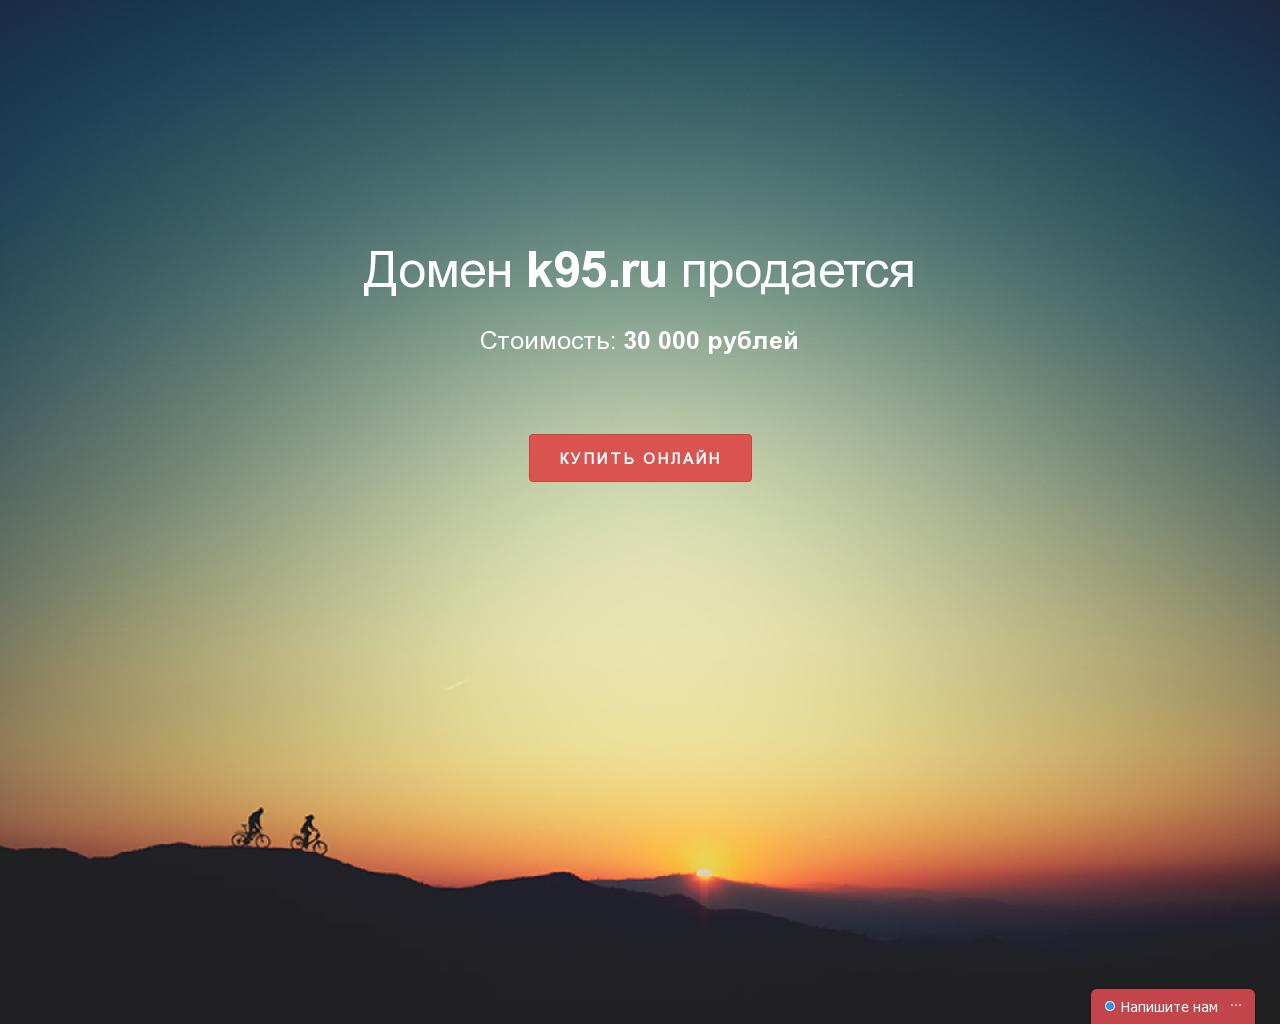 Изображение сайта k95.ru в разрешении 1280x1024